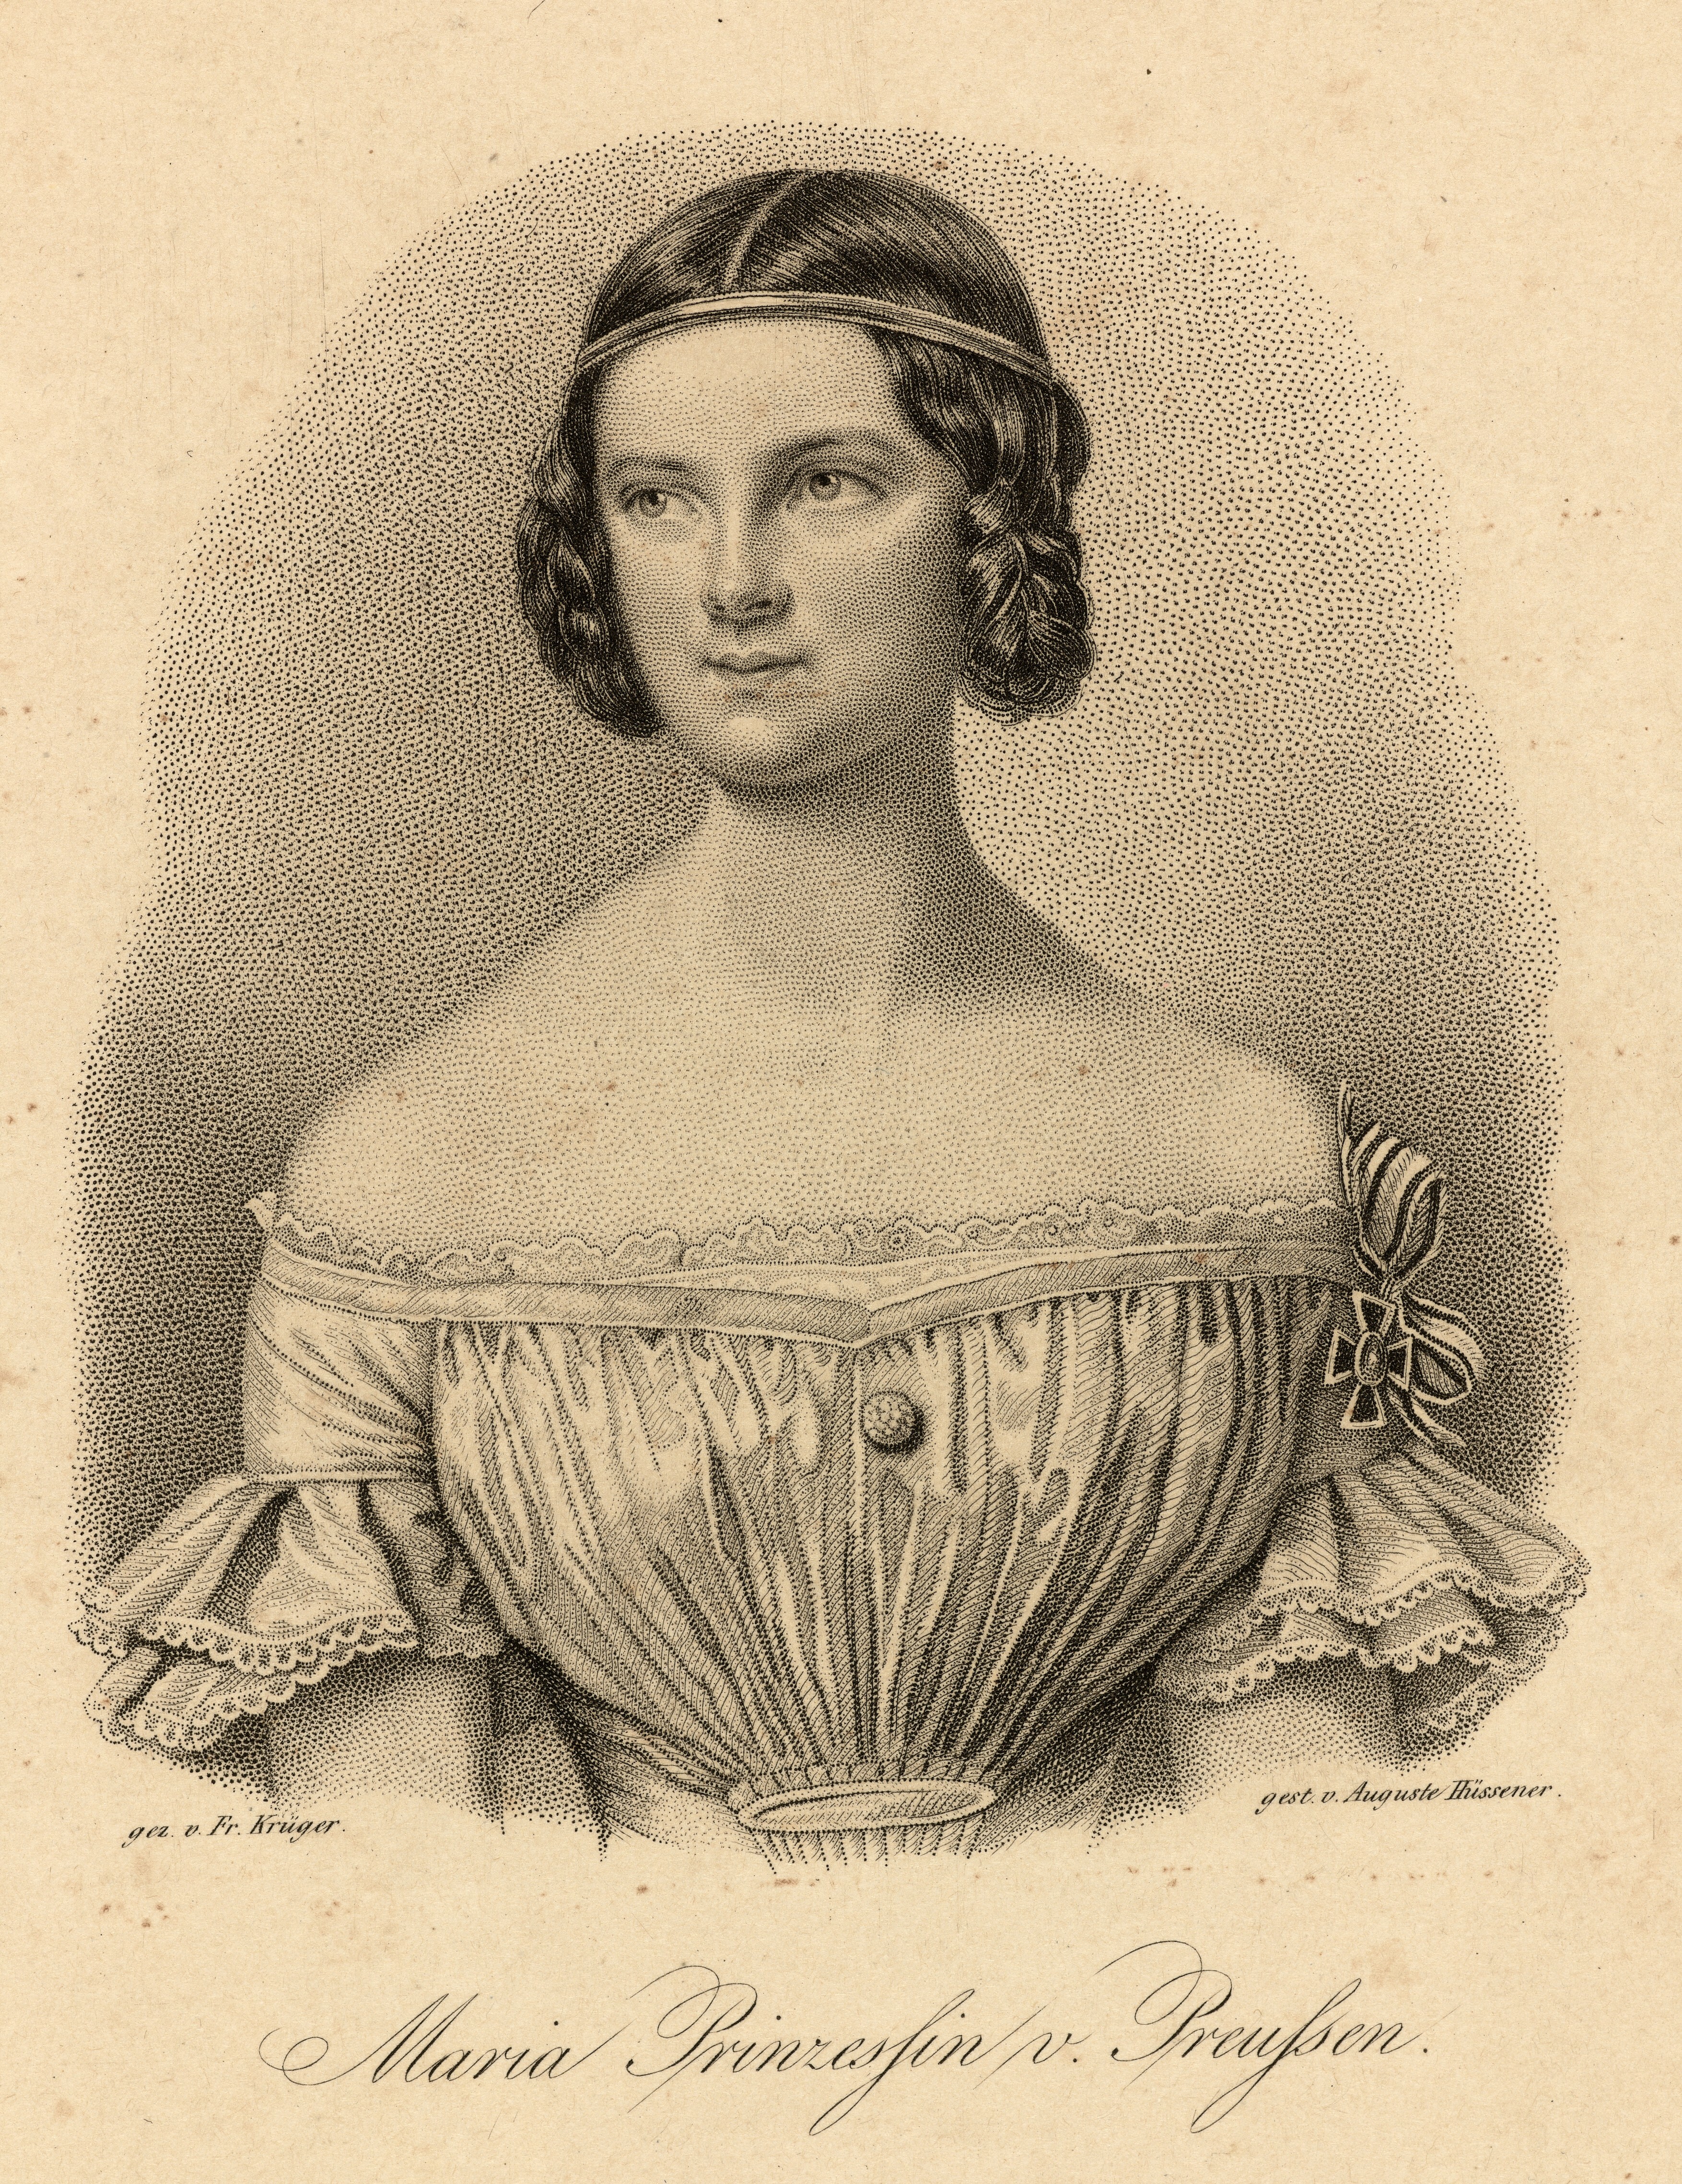 Hüssener, Auguste: Porträt Marie, Prinzessin von Preußen, verehel. Königin von Bayern (Stiftung Stadtmuseum Berlin Public Domain Mark)